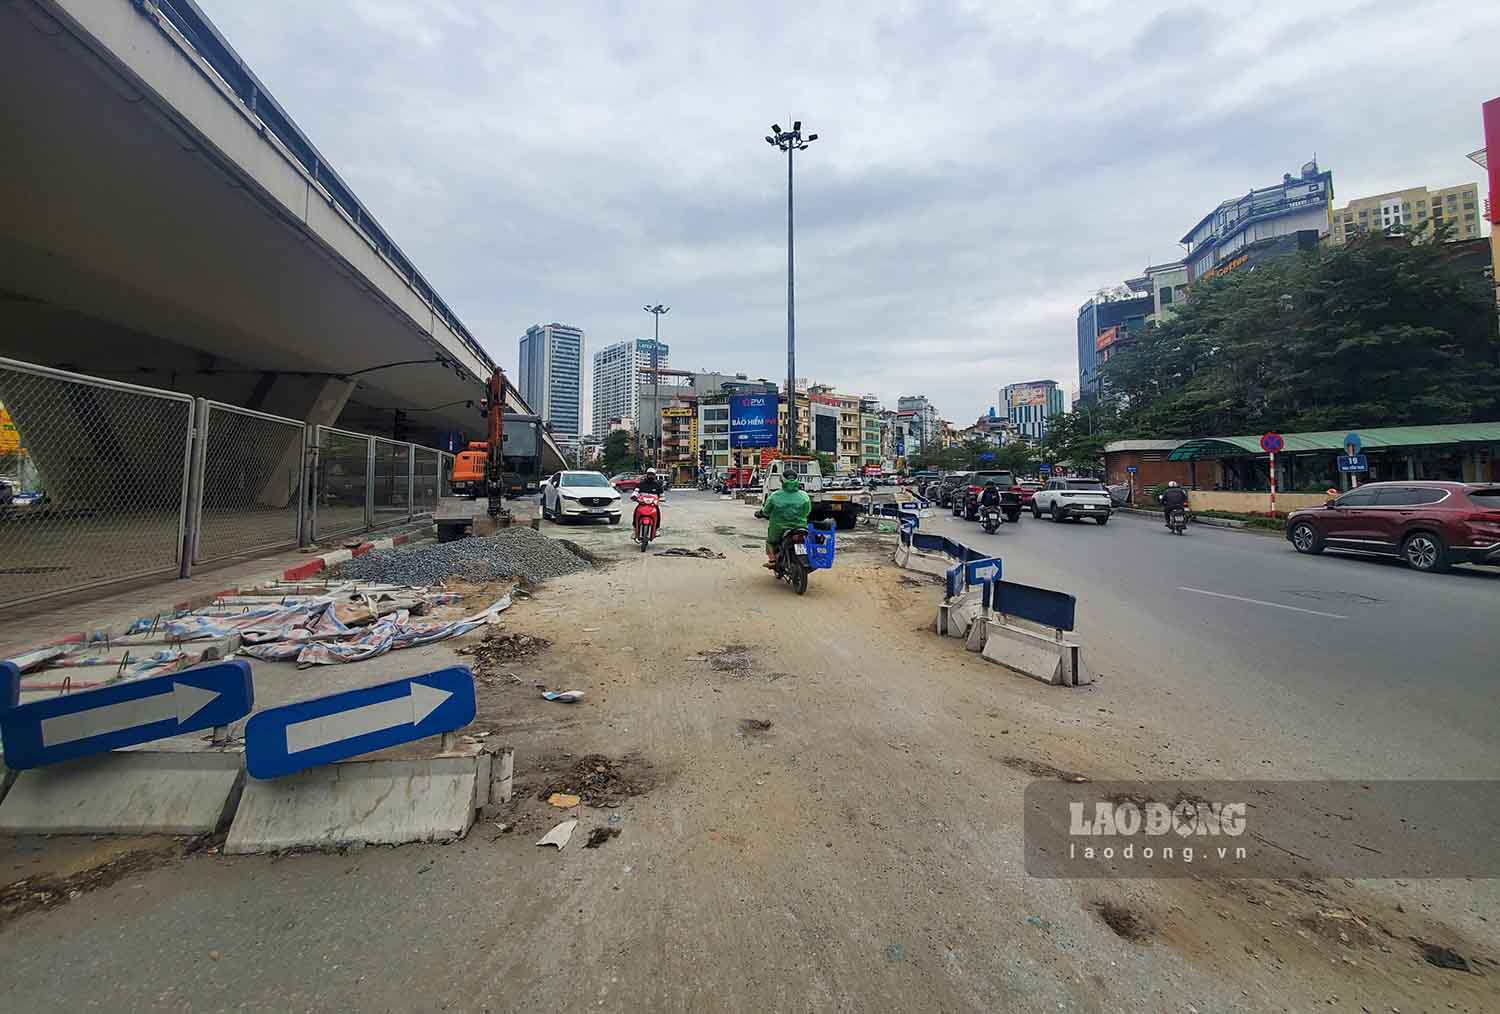 Một phần dải phân cách di động được tạm dỡ bỏ phục vụ quá trình thi công. Đây là dải phân cách để ngăn các phương tiện từ Nguyễn Trãi đi thẳng sang Tây Sơn, rẽ trái đi Láng.